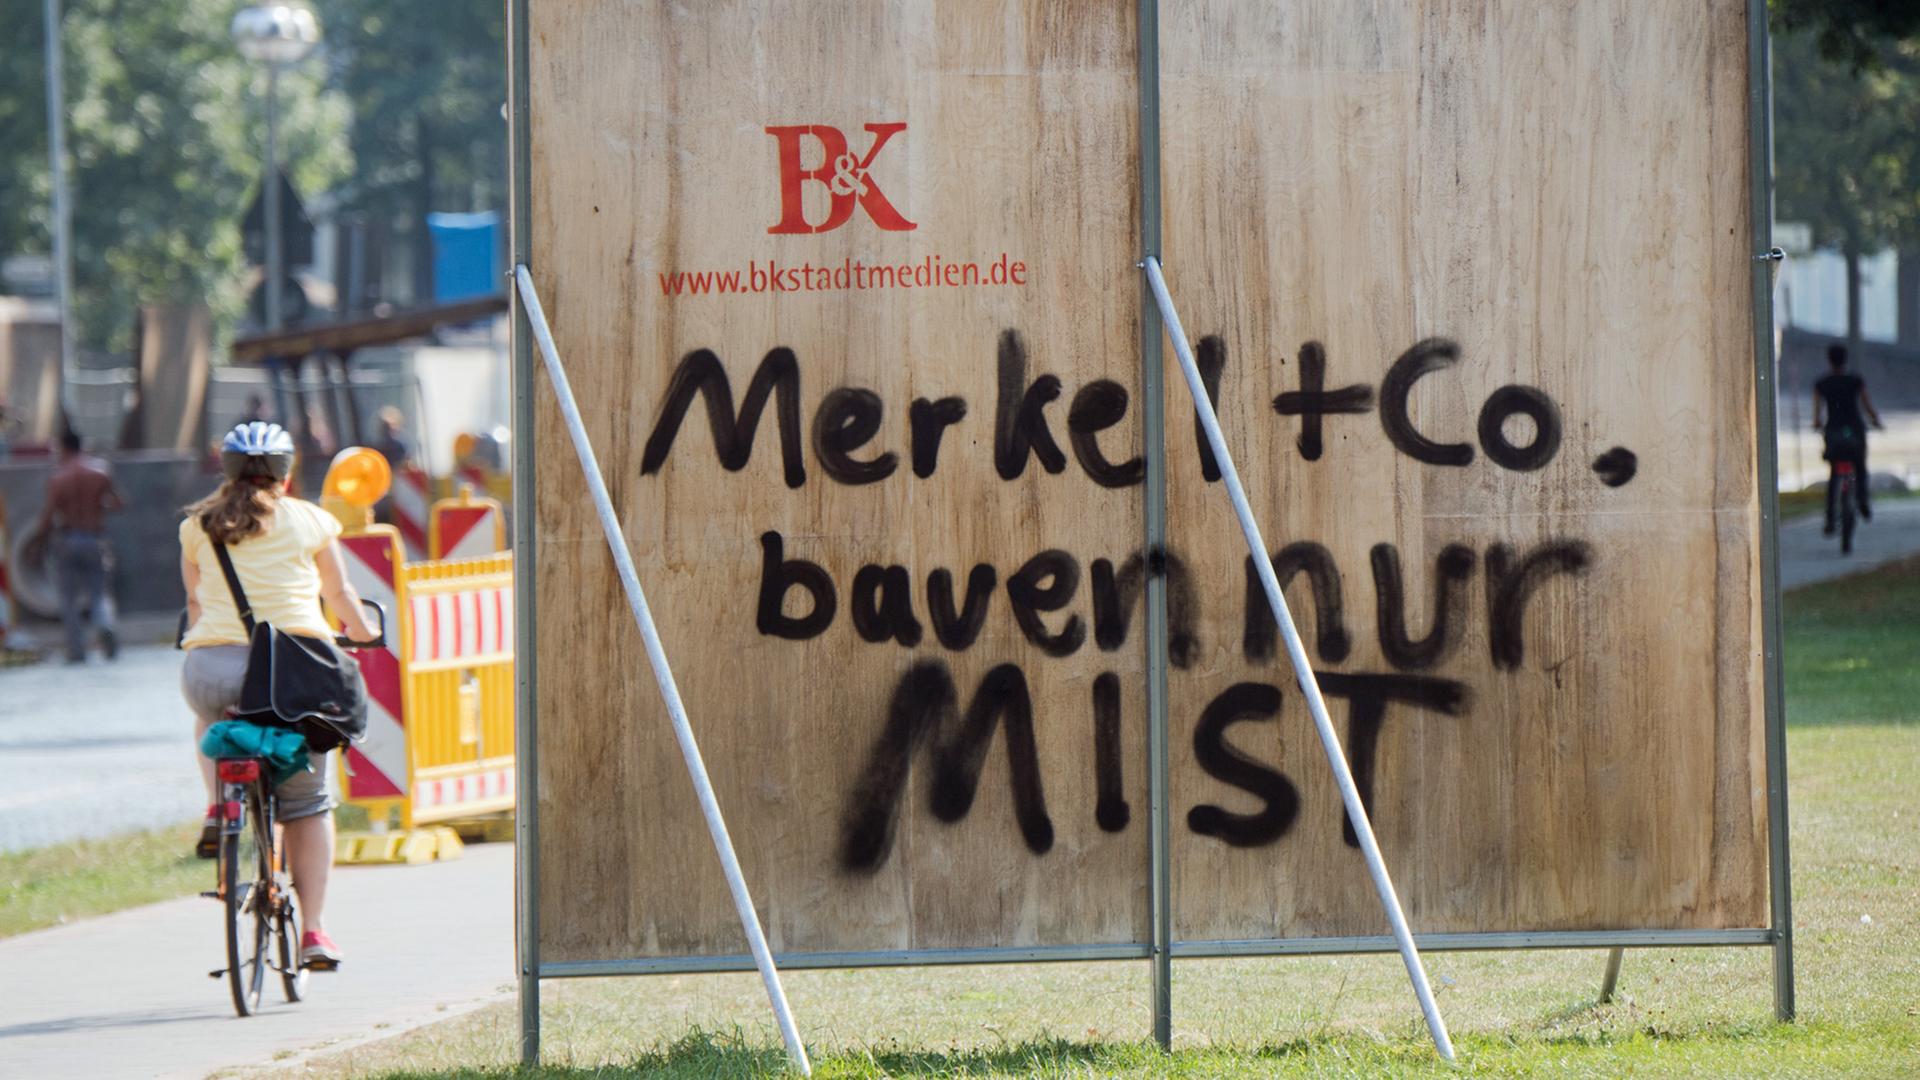 Ein Schriftzug "Merkel + Co. bauen nur Mist" auf einer Plakatwand in Hannover